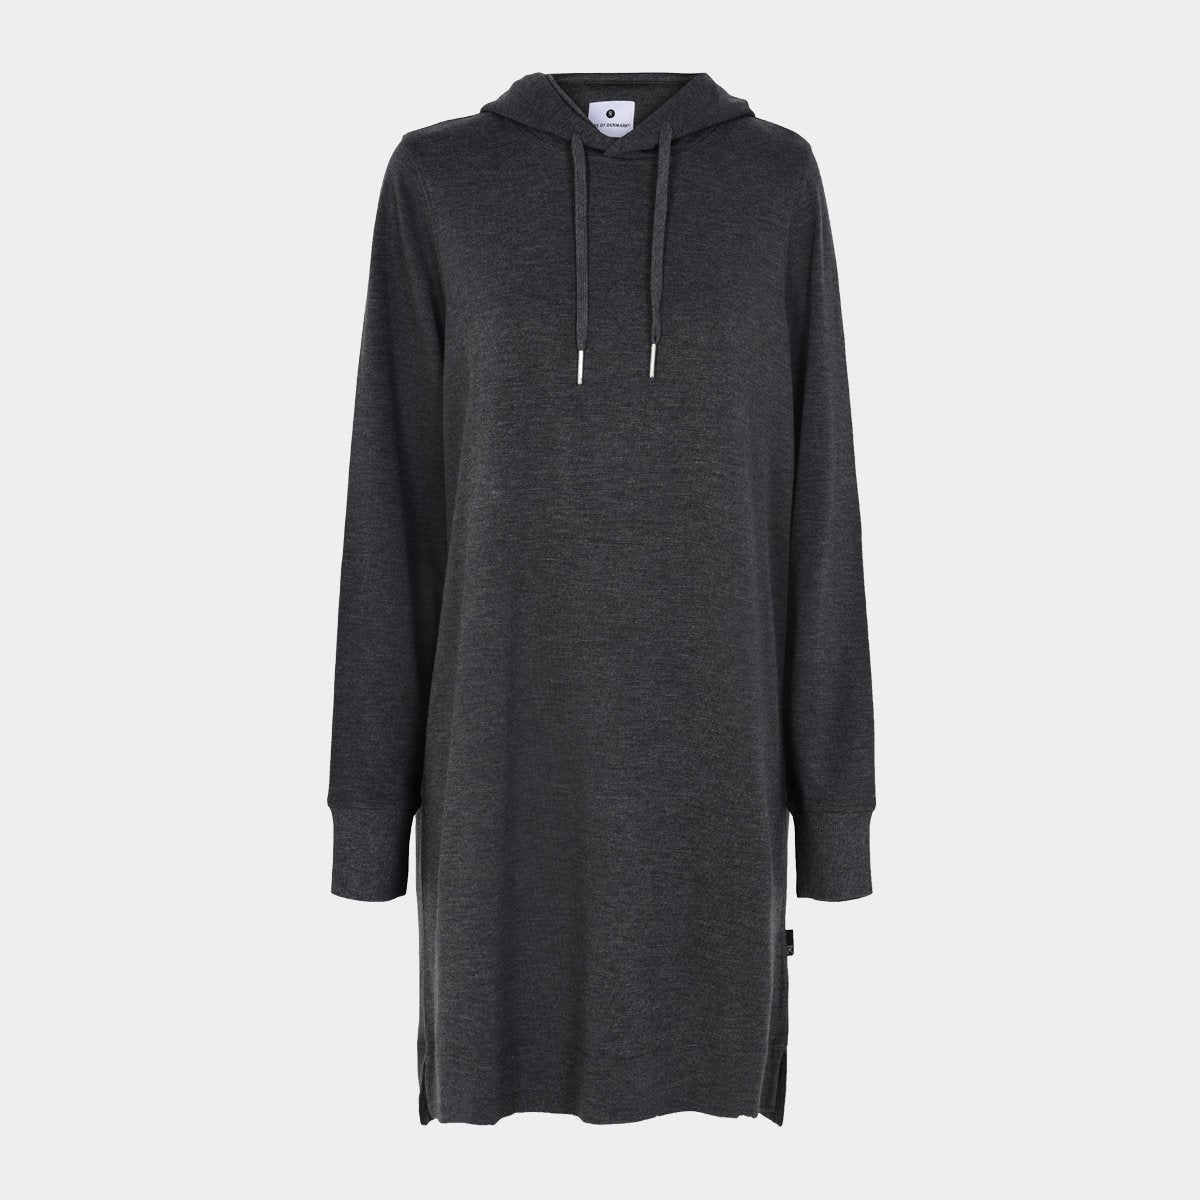 Bambus hoodie kjole | Mørkegrå kjole hoodie fra JBS of Denmark, XXL